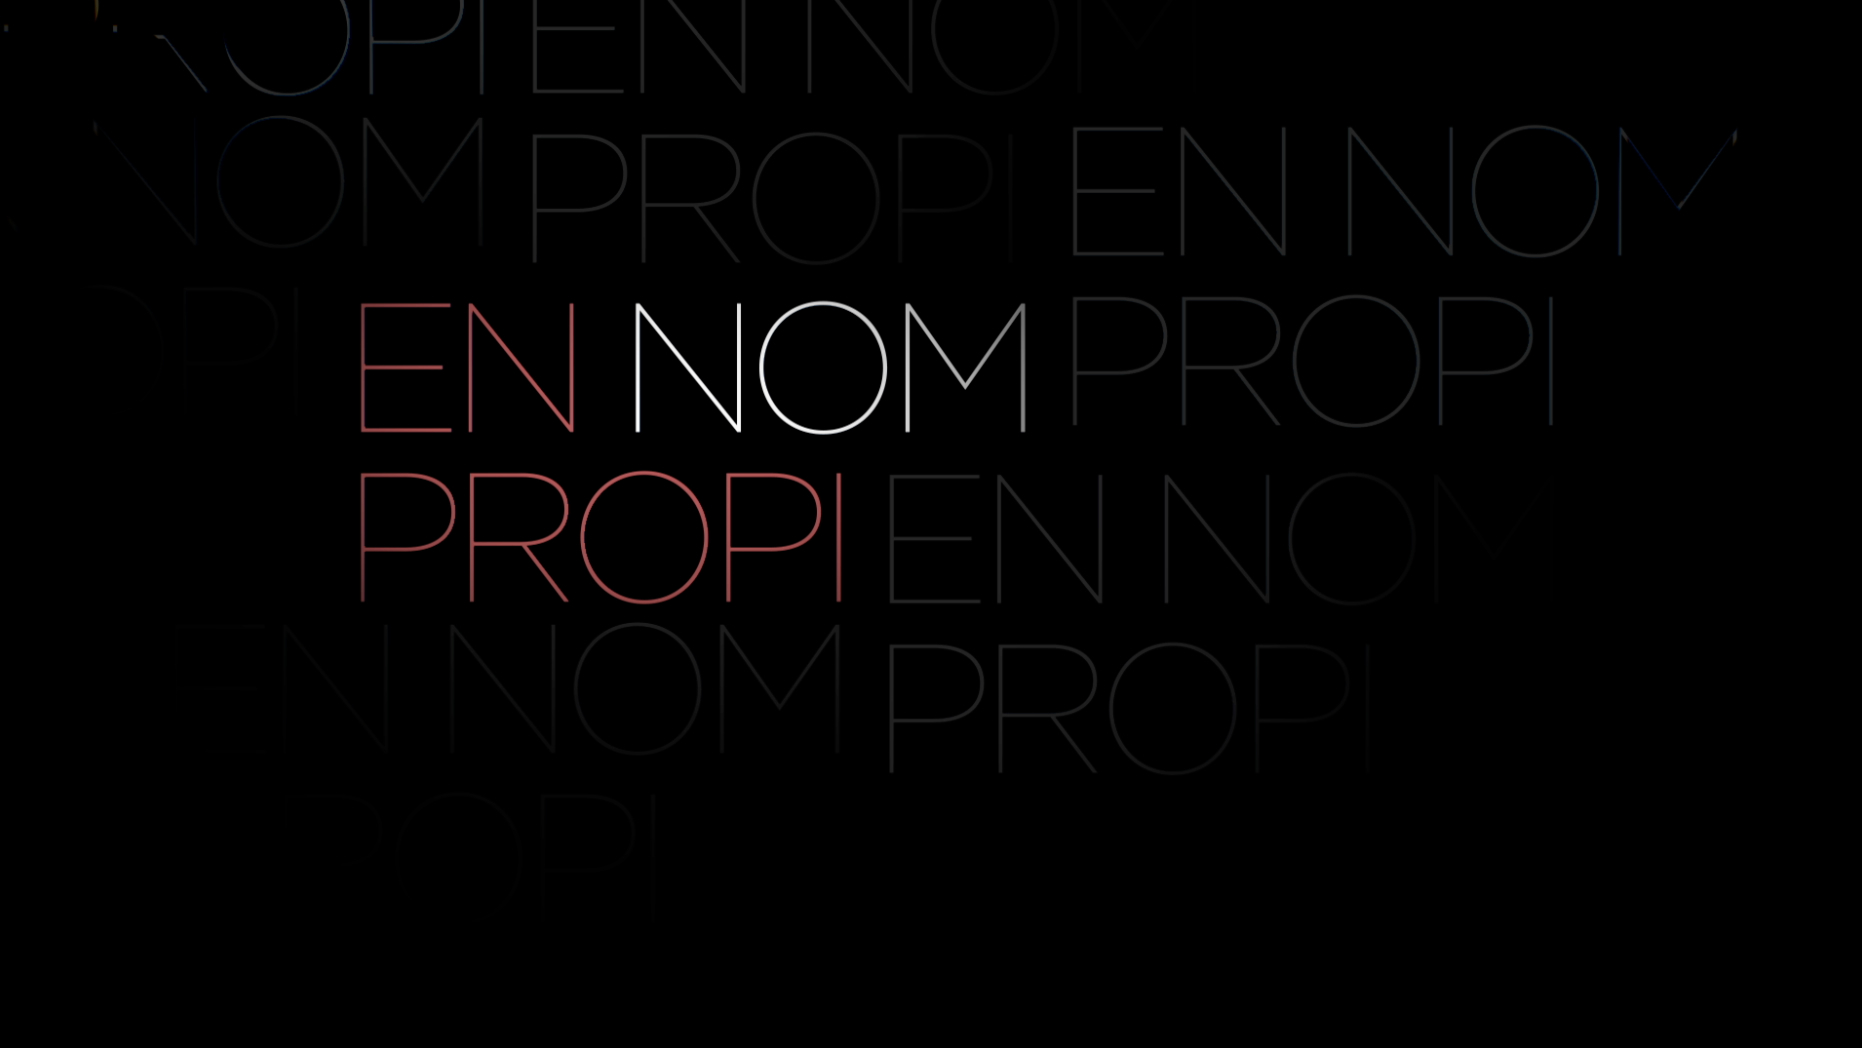 En nom propi (work in progress)